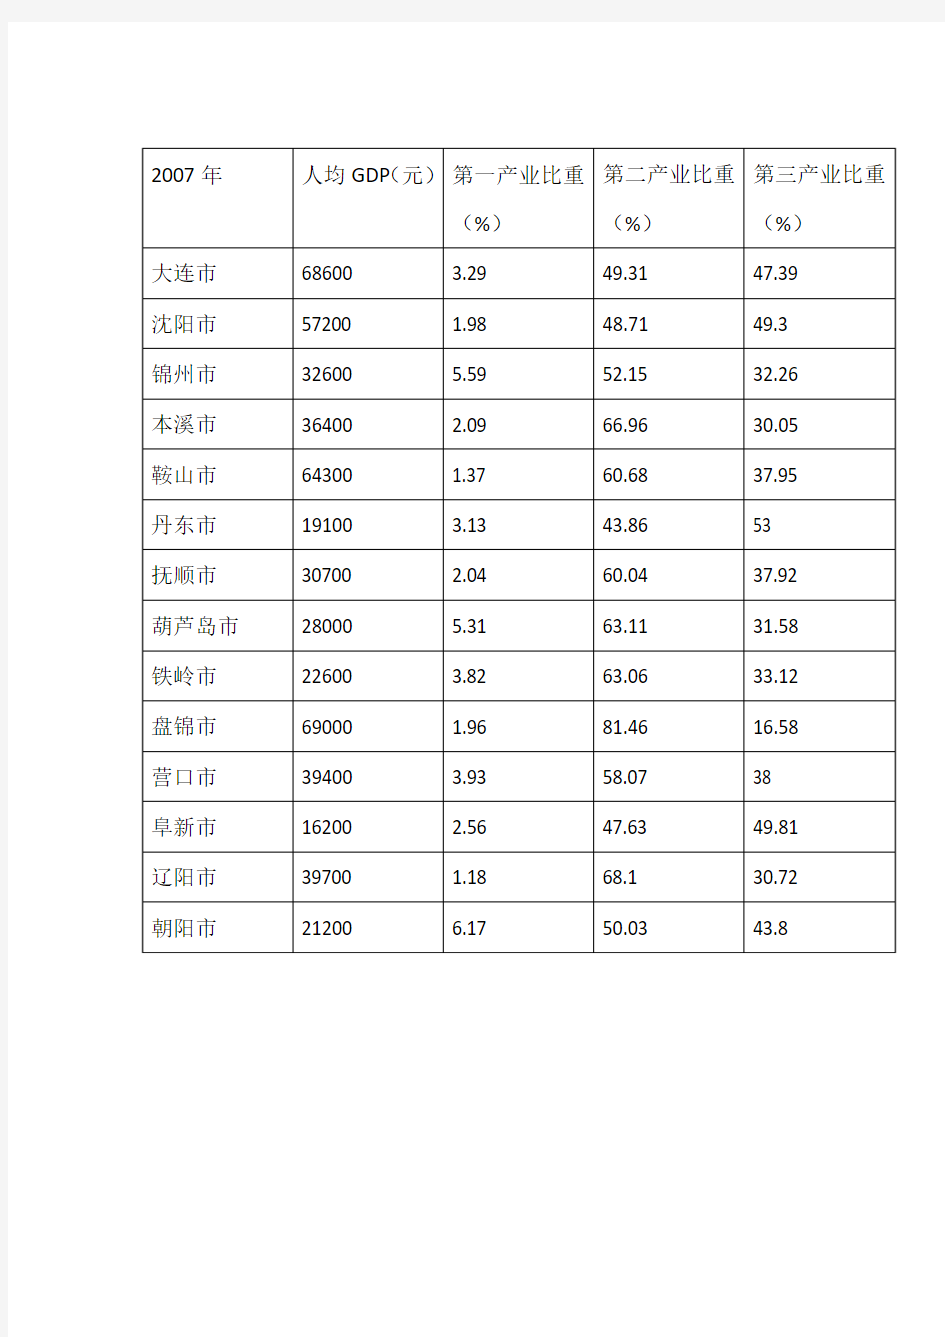 辽宁省人均GDP及产业结构数据